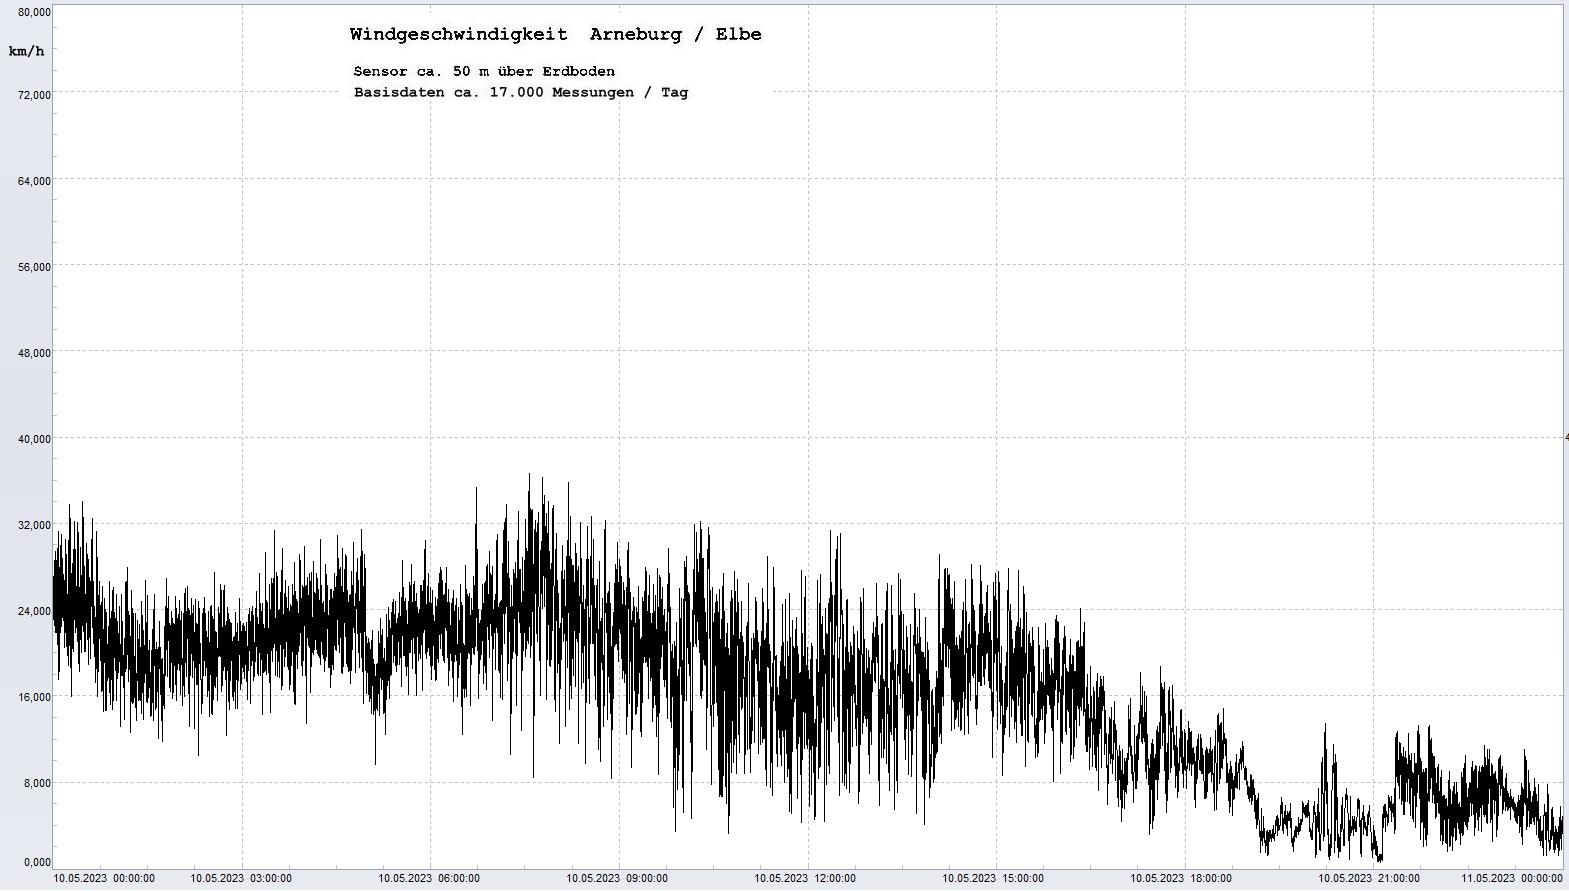 Arneburg Tages-Diagramm Winddaten, 10.05.2023
  Diagramm, Sensor auf Gebude, ca. 50 m ber Erdboden, Basis: 5s-Aufzeichnung